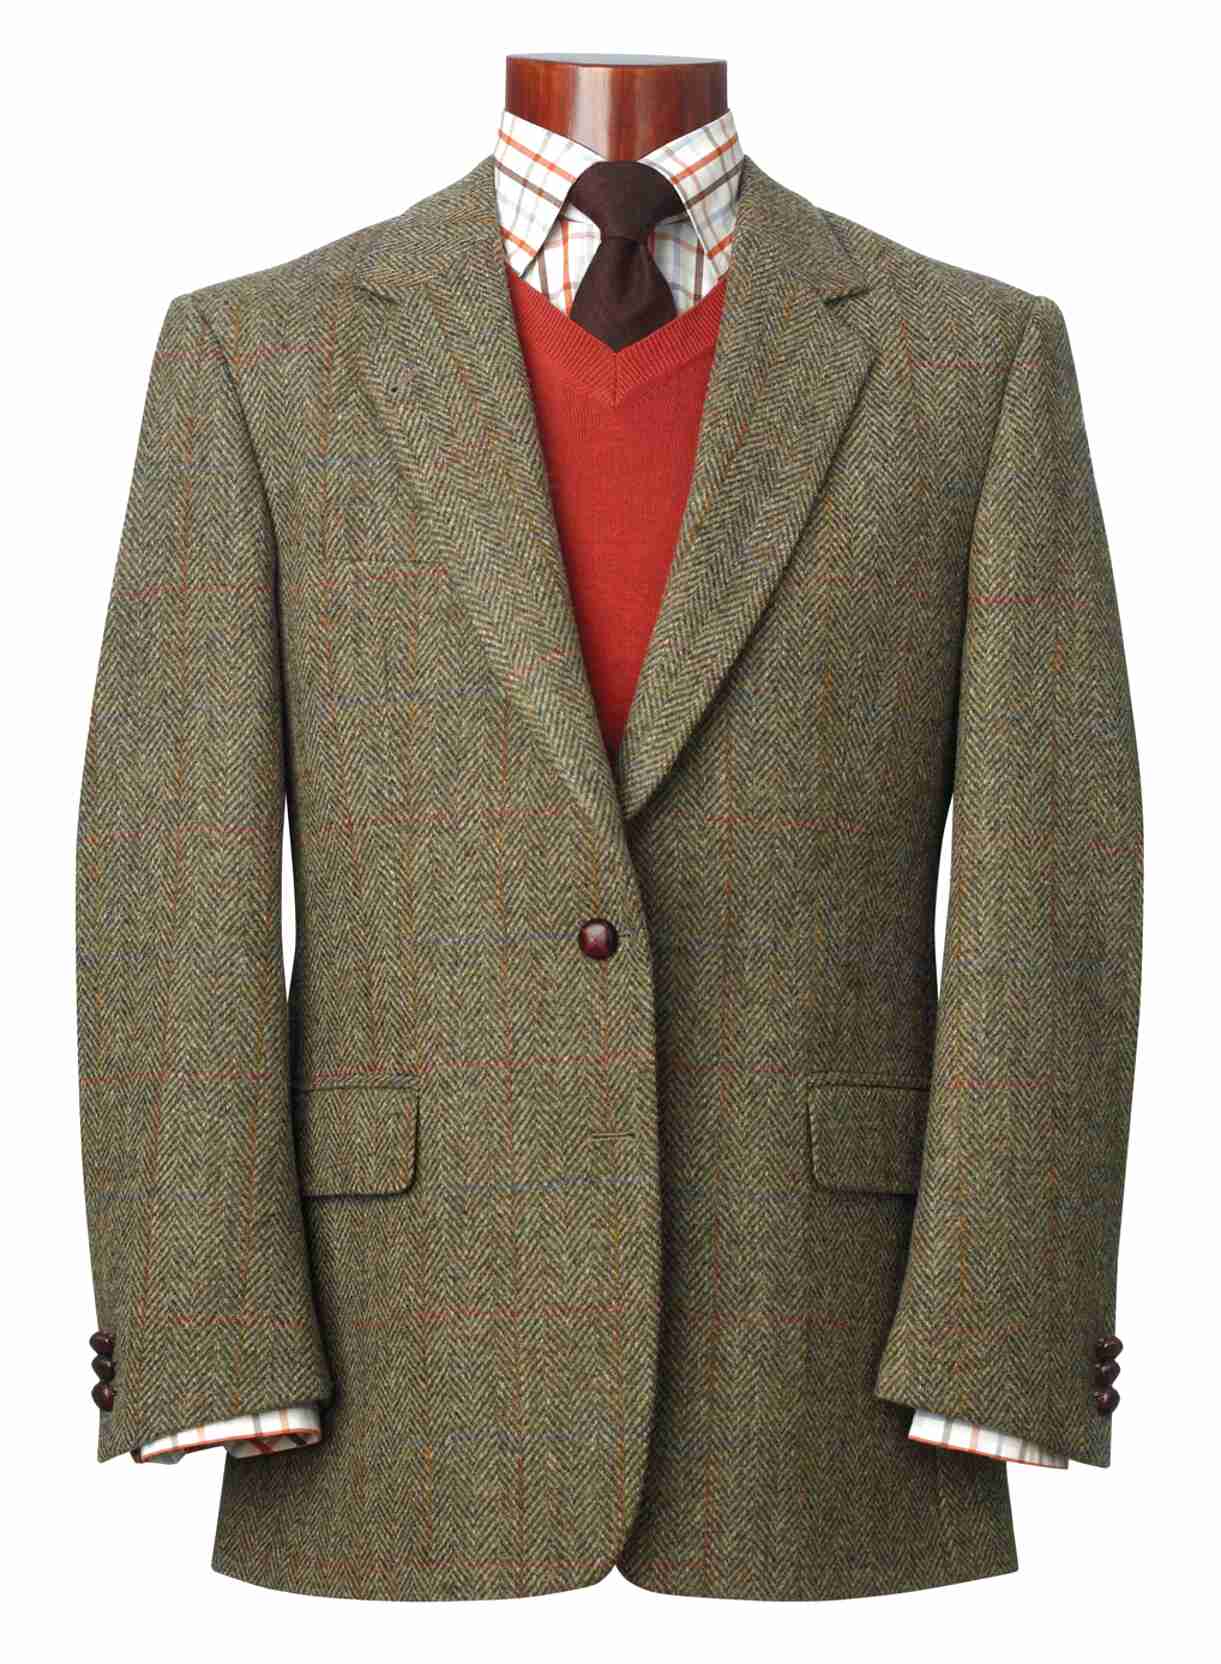 Harris Tweed Jacket for sale in UK | 96 used Harris Tweed Jackets